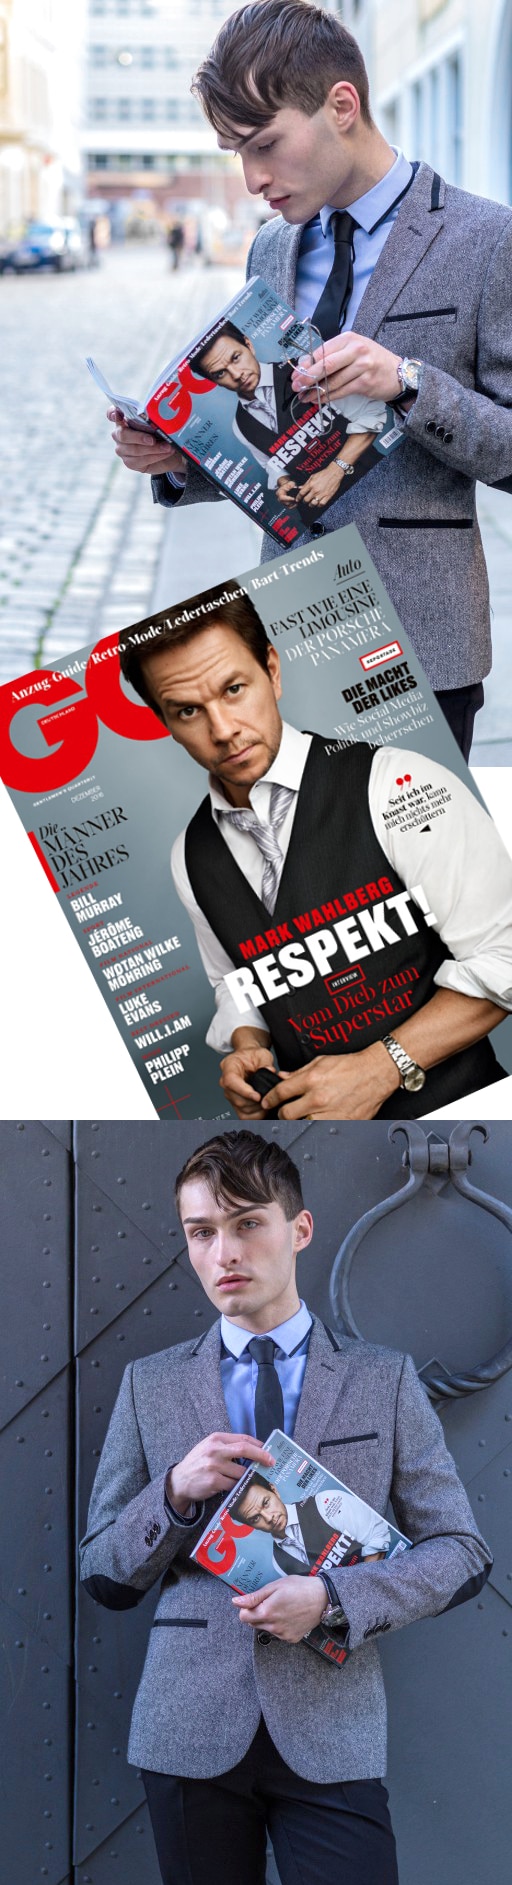 GQ Magazin - Männer Mode Magazin - Fashion Blog für Männer - MISTER MATTHEW -